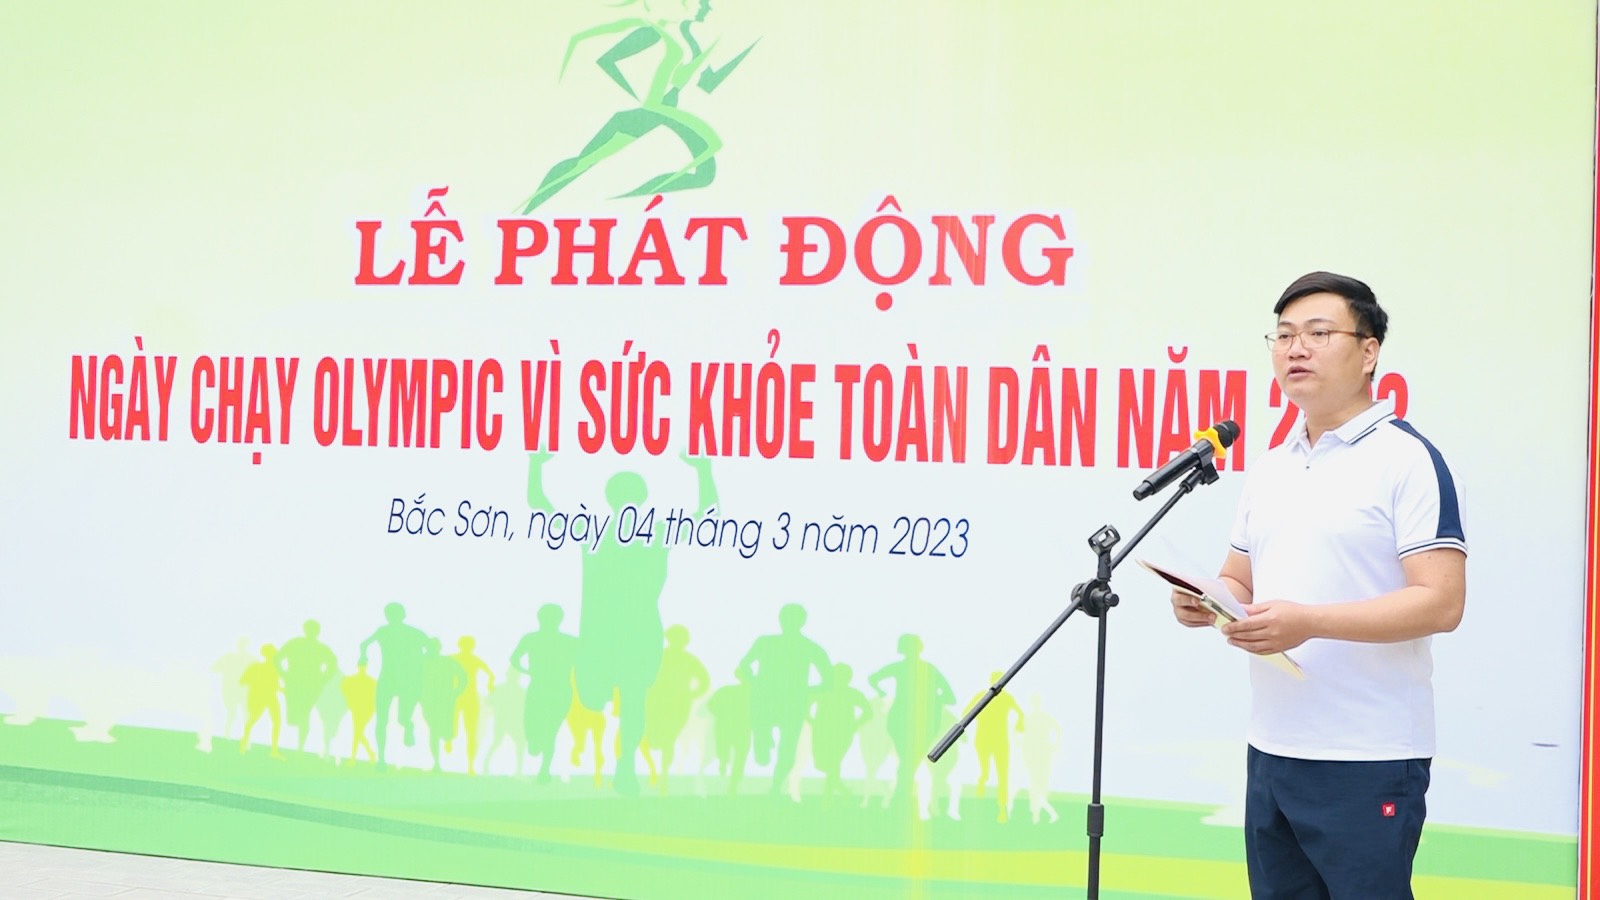 UBND phường Bắc Sơn tổ chức Lễ phát động “Ngày chạy Olympic vì sức khỏe toàn dân năm 2023”.